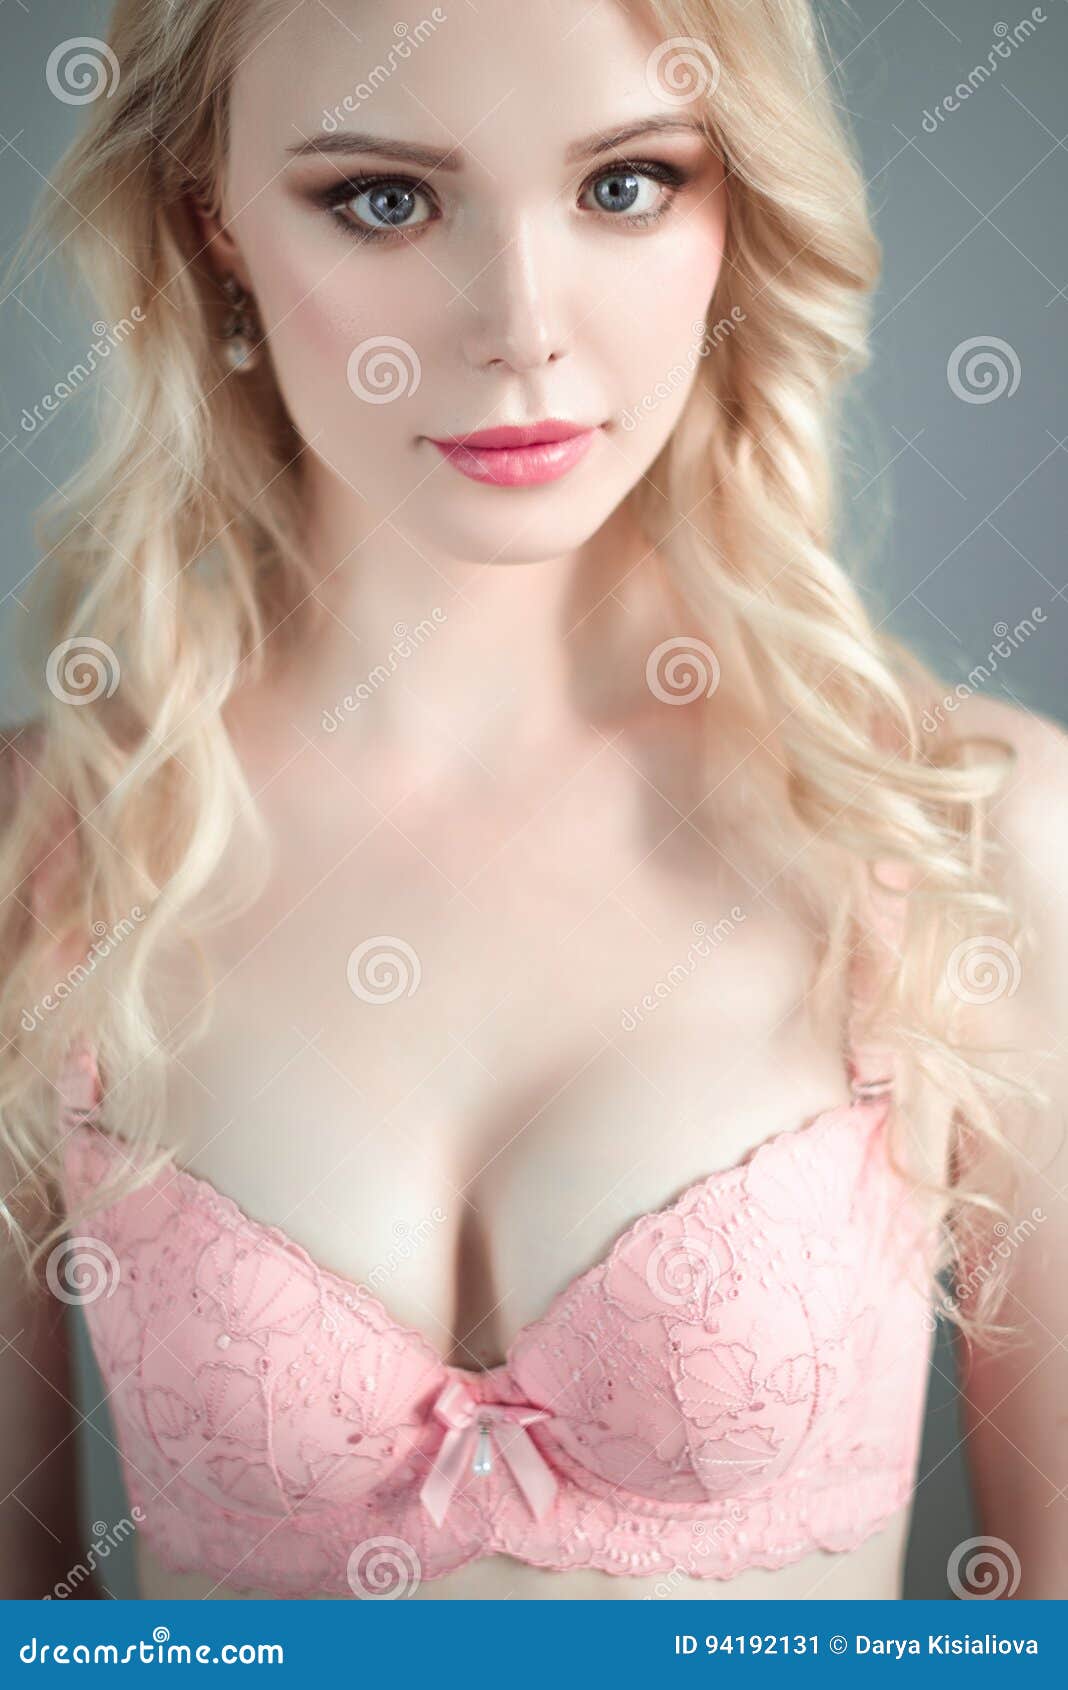 abiodun lawal add photo hot blonde in bra